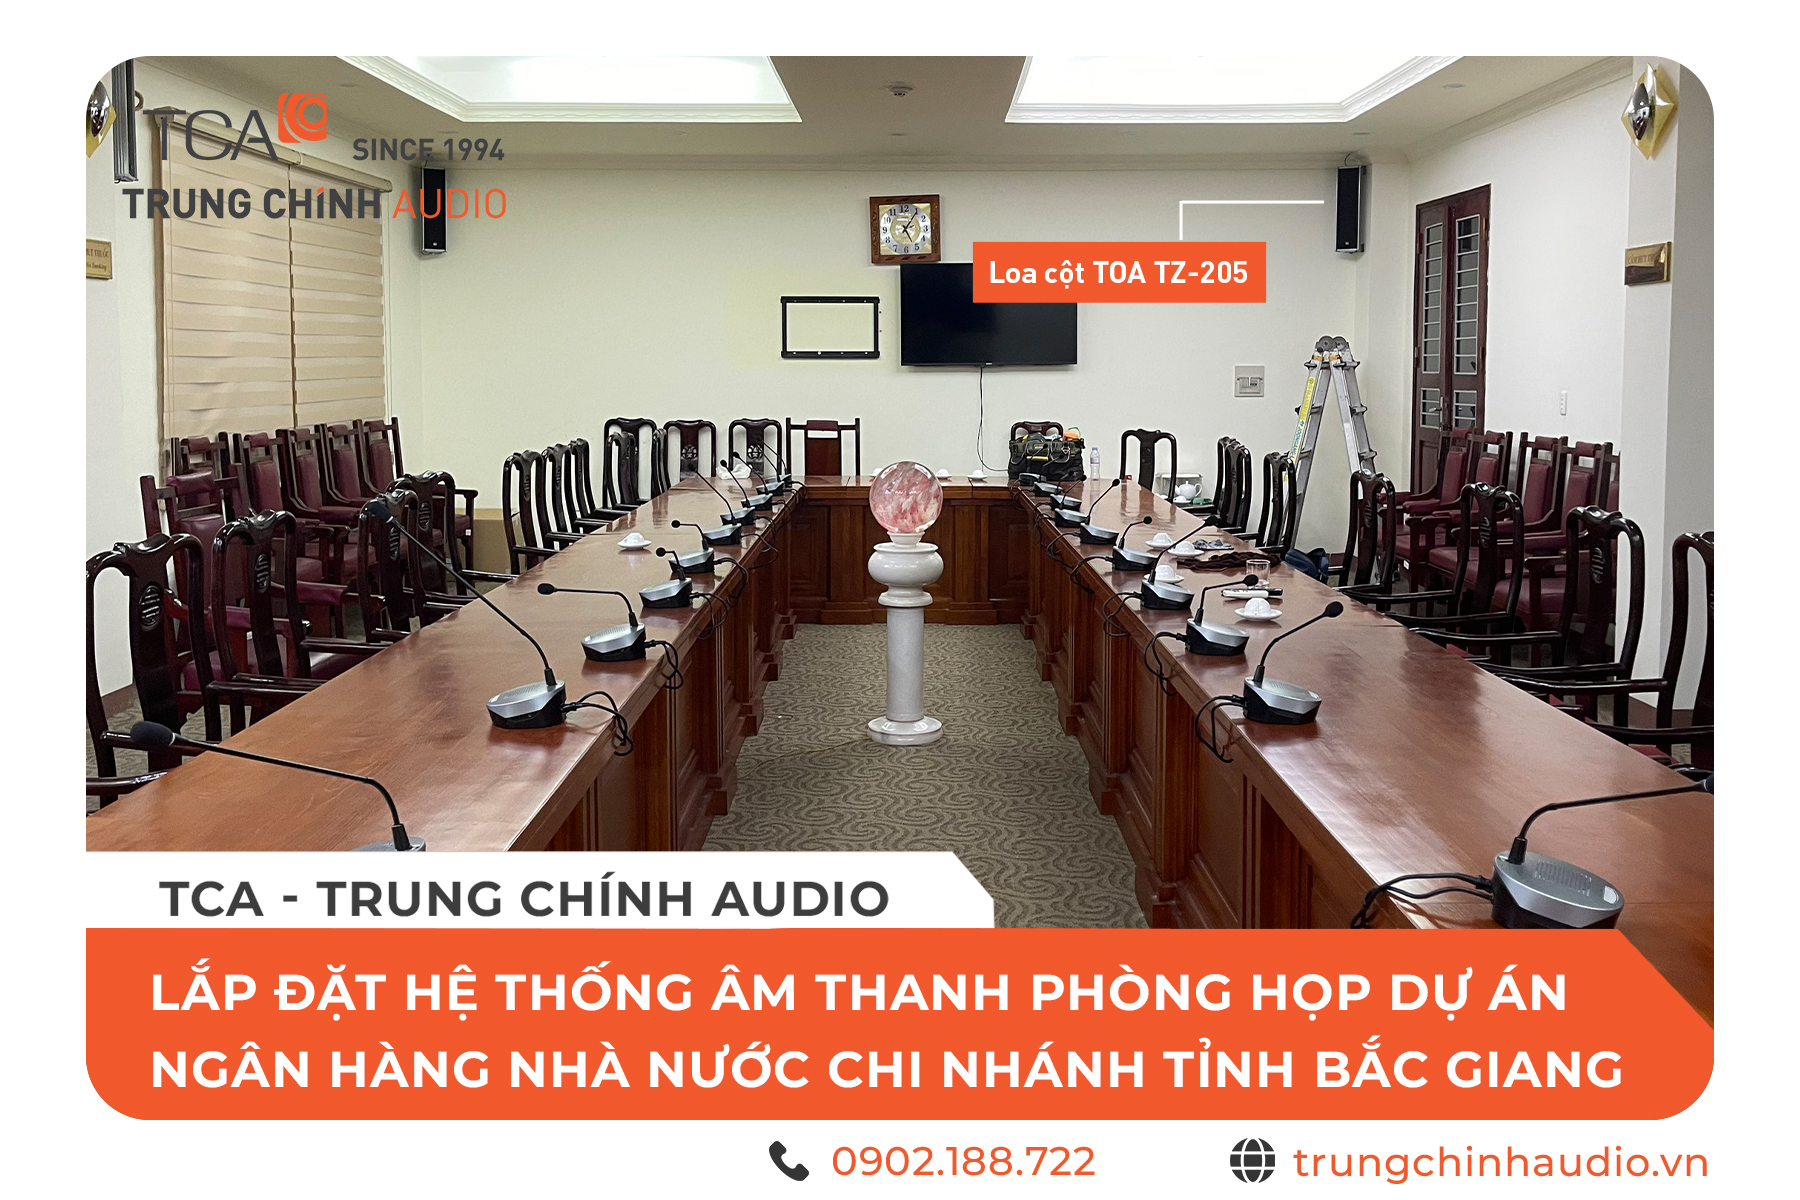 TCA - Trung Chính Audio lắp đặt hệ thống âm thanh phòng họp dự án Ngân hàng Nhà nước chi nhánh tỉnh Bắc Giang